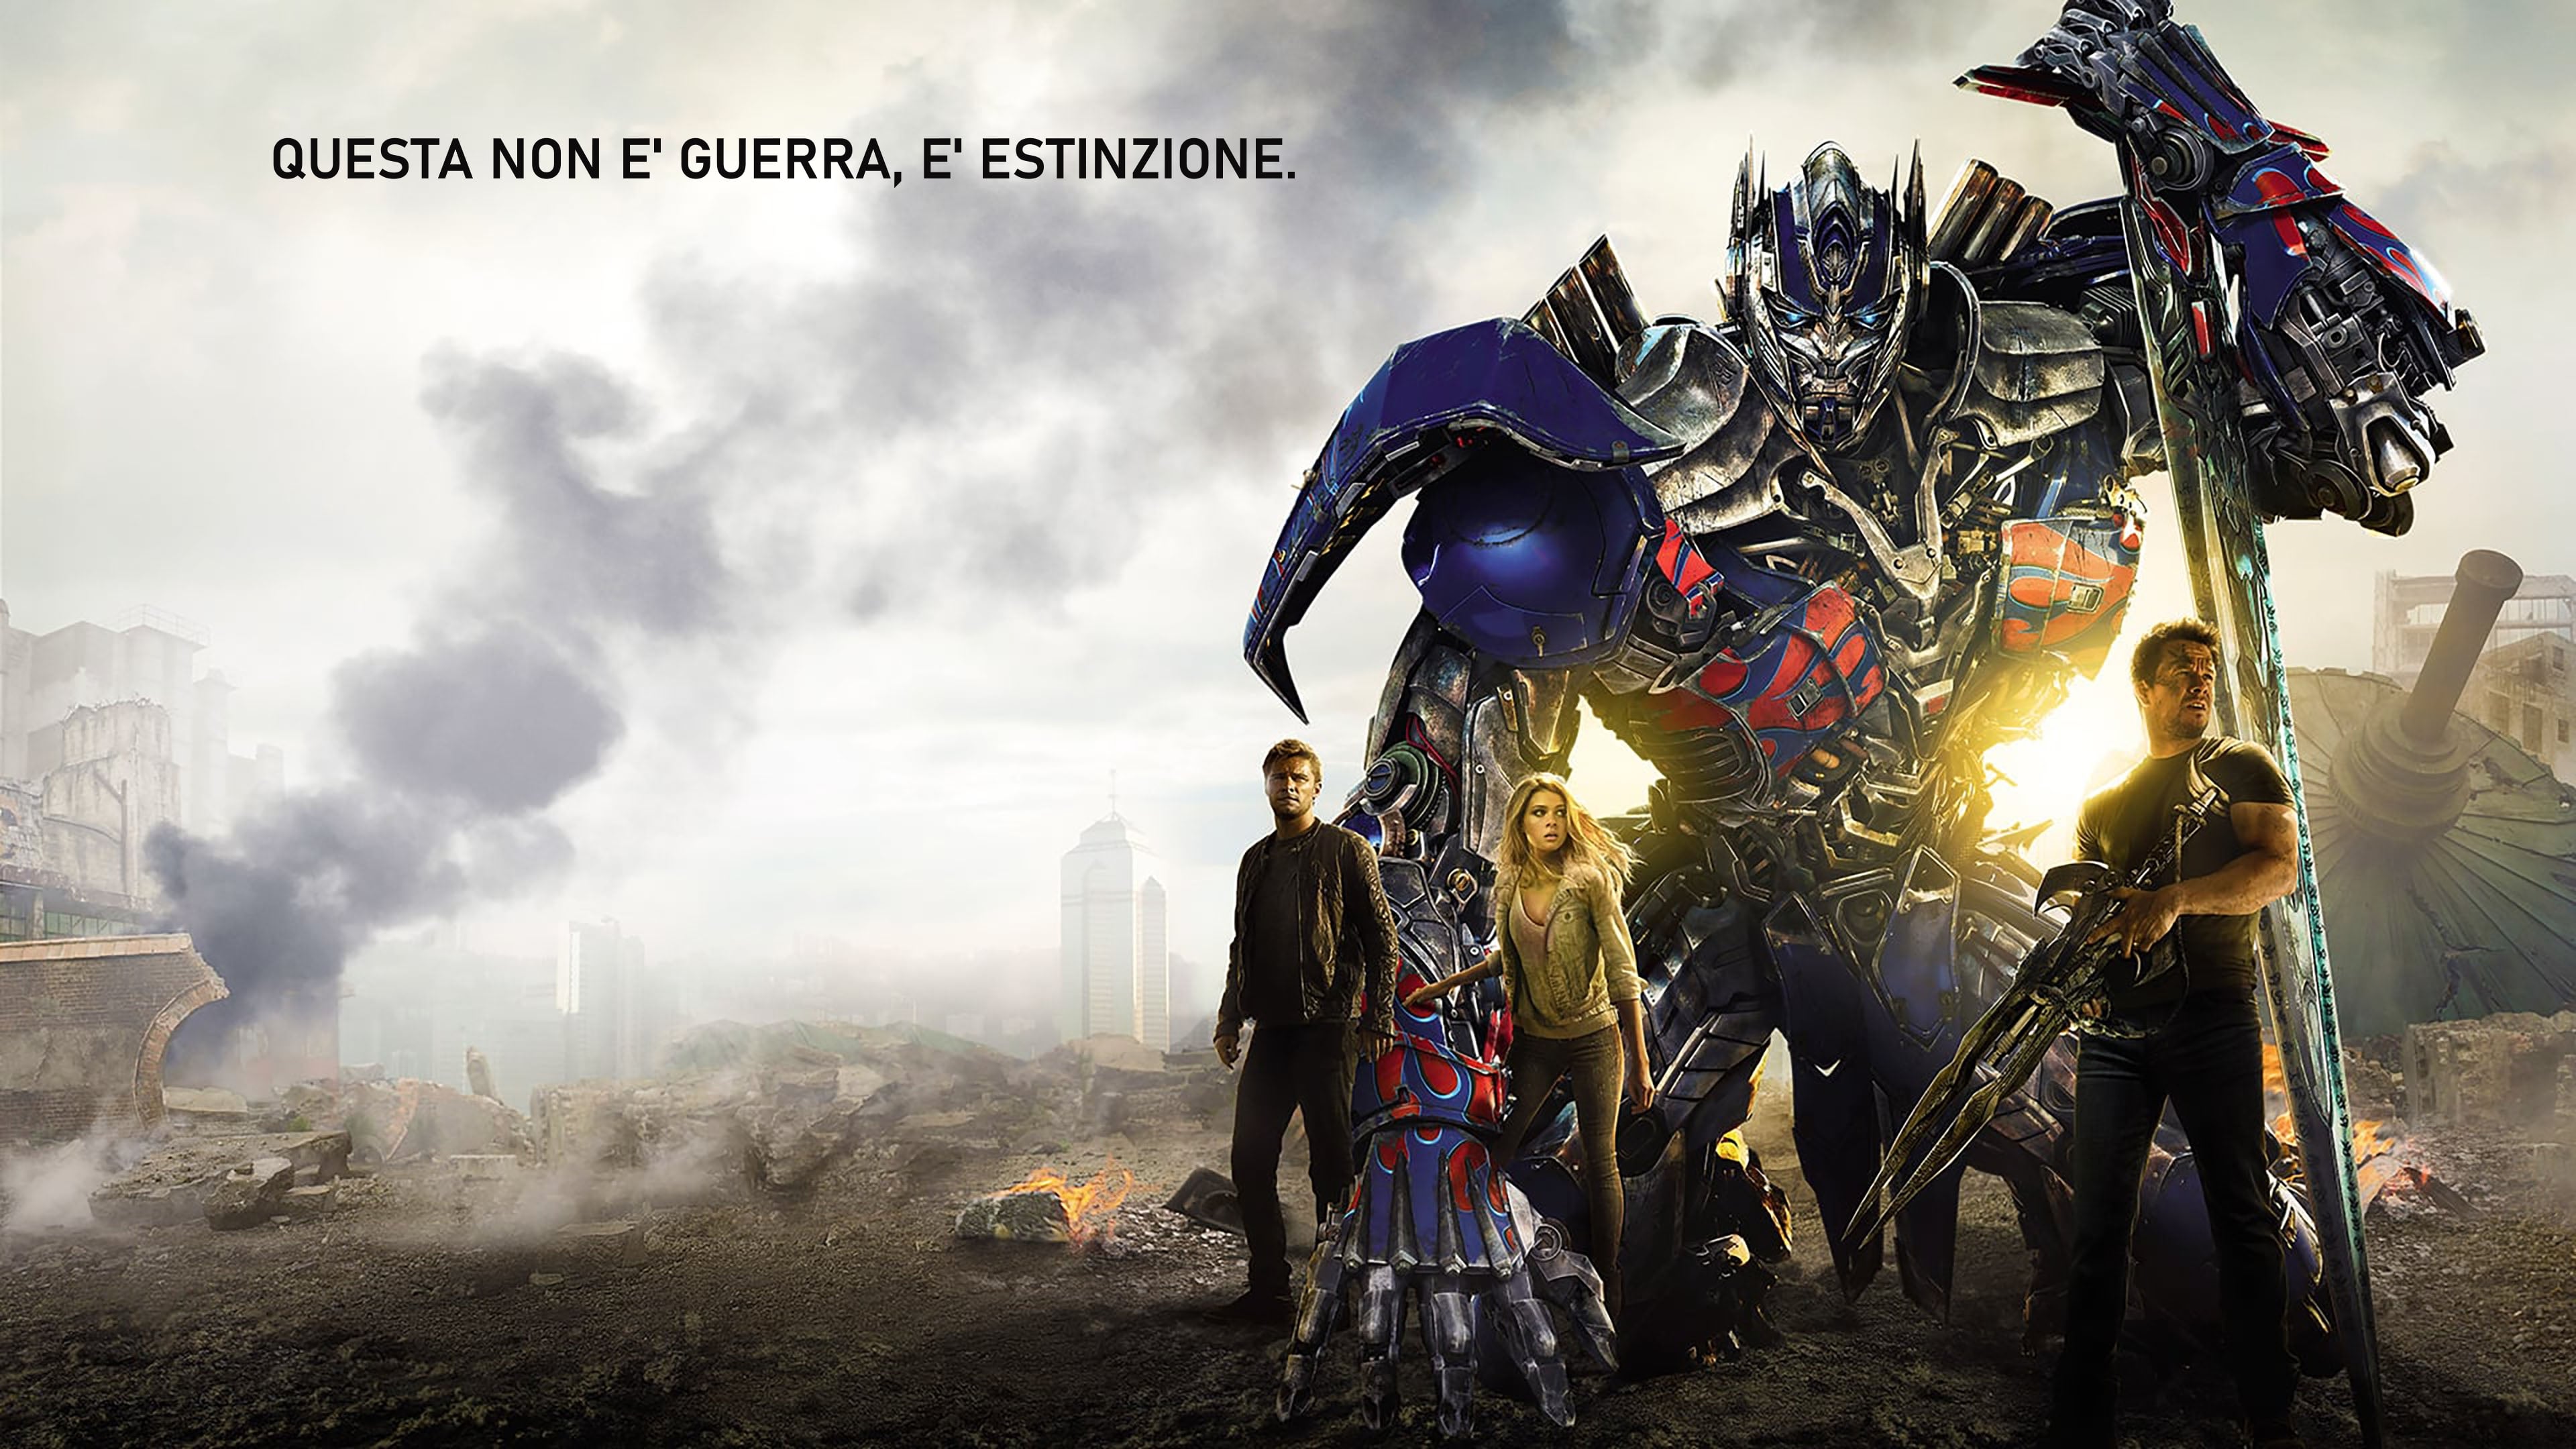 Transformers 4: La Era de la Extinción